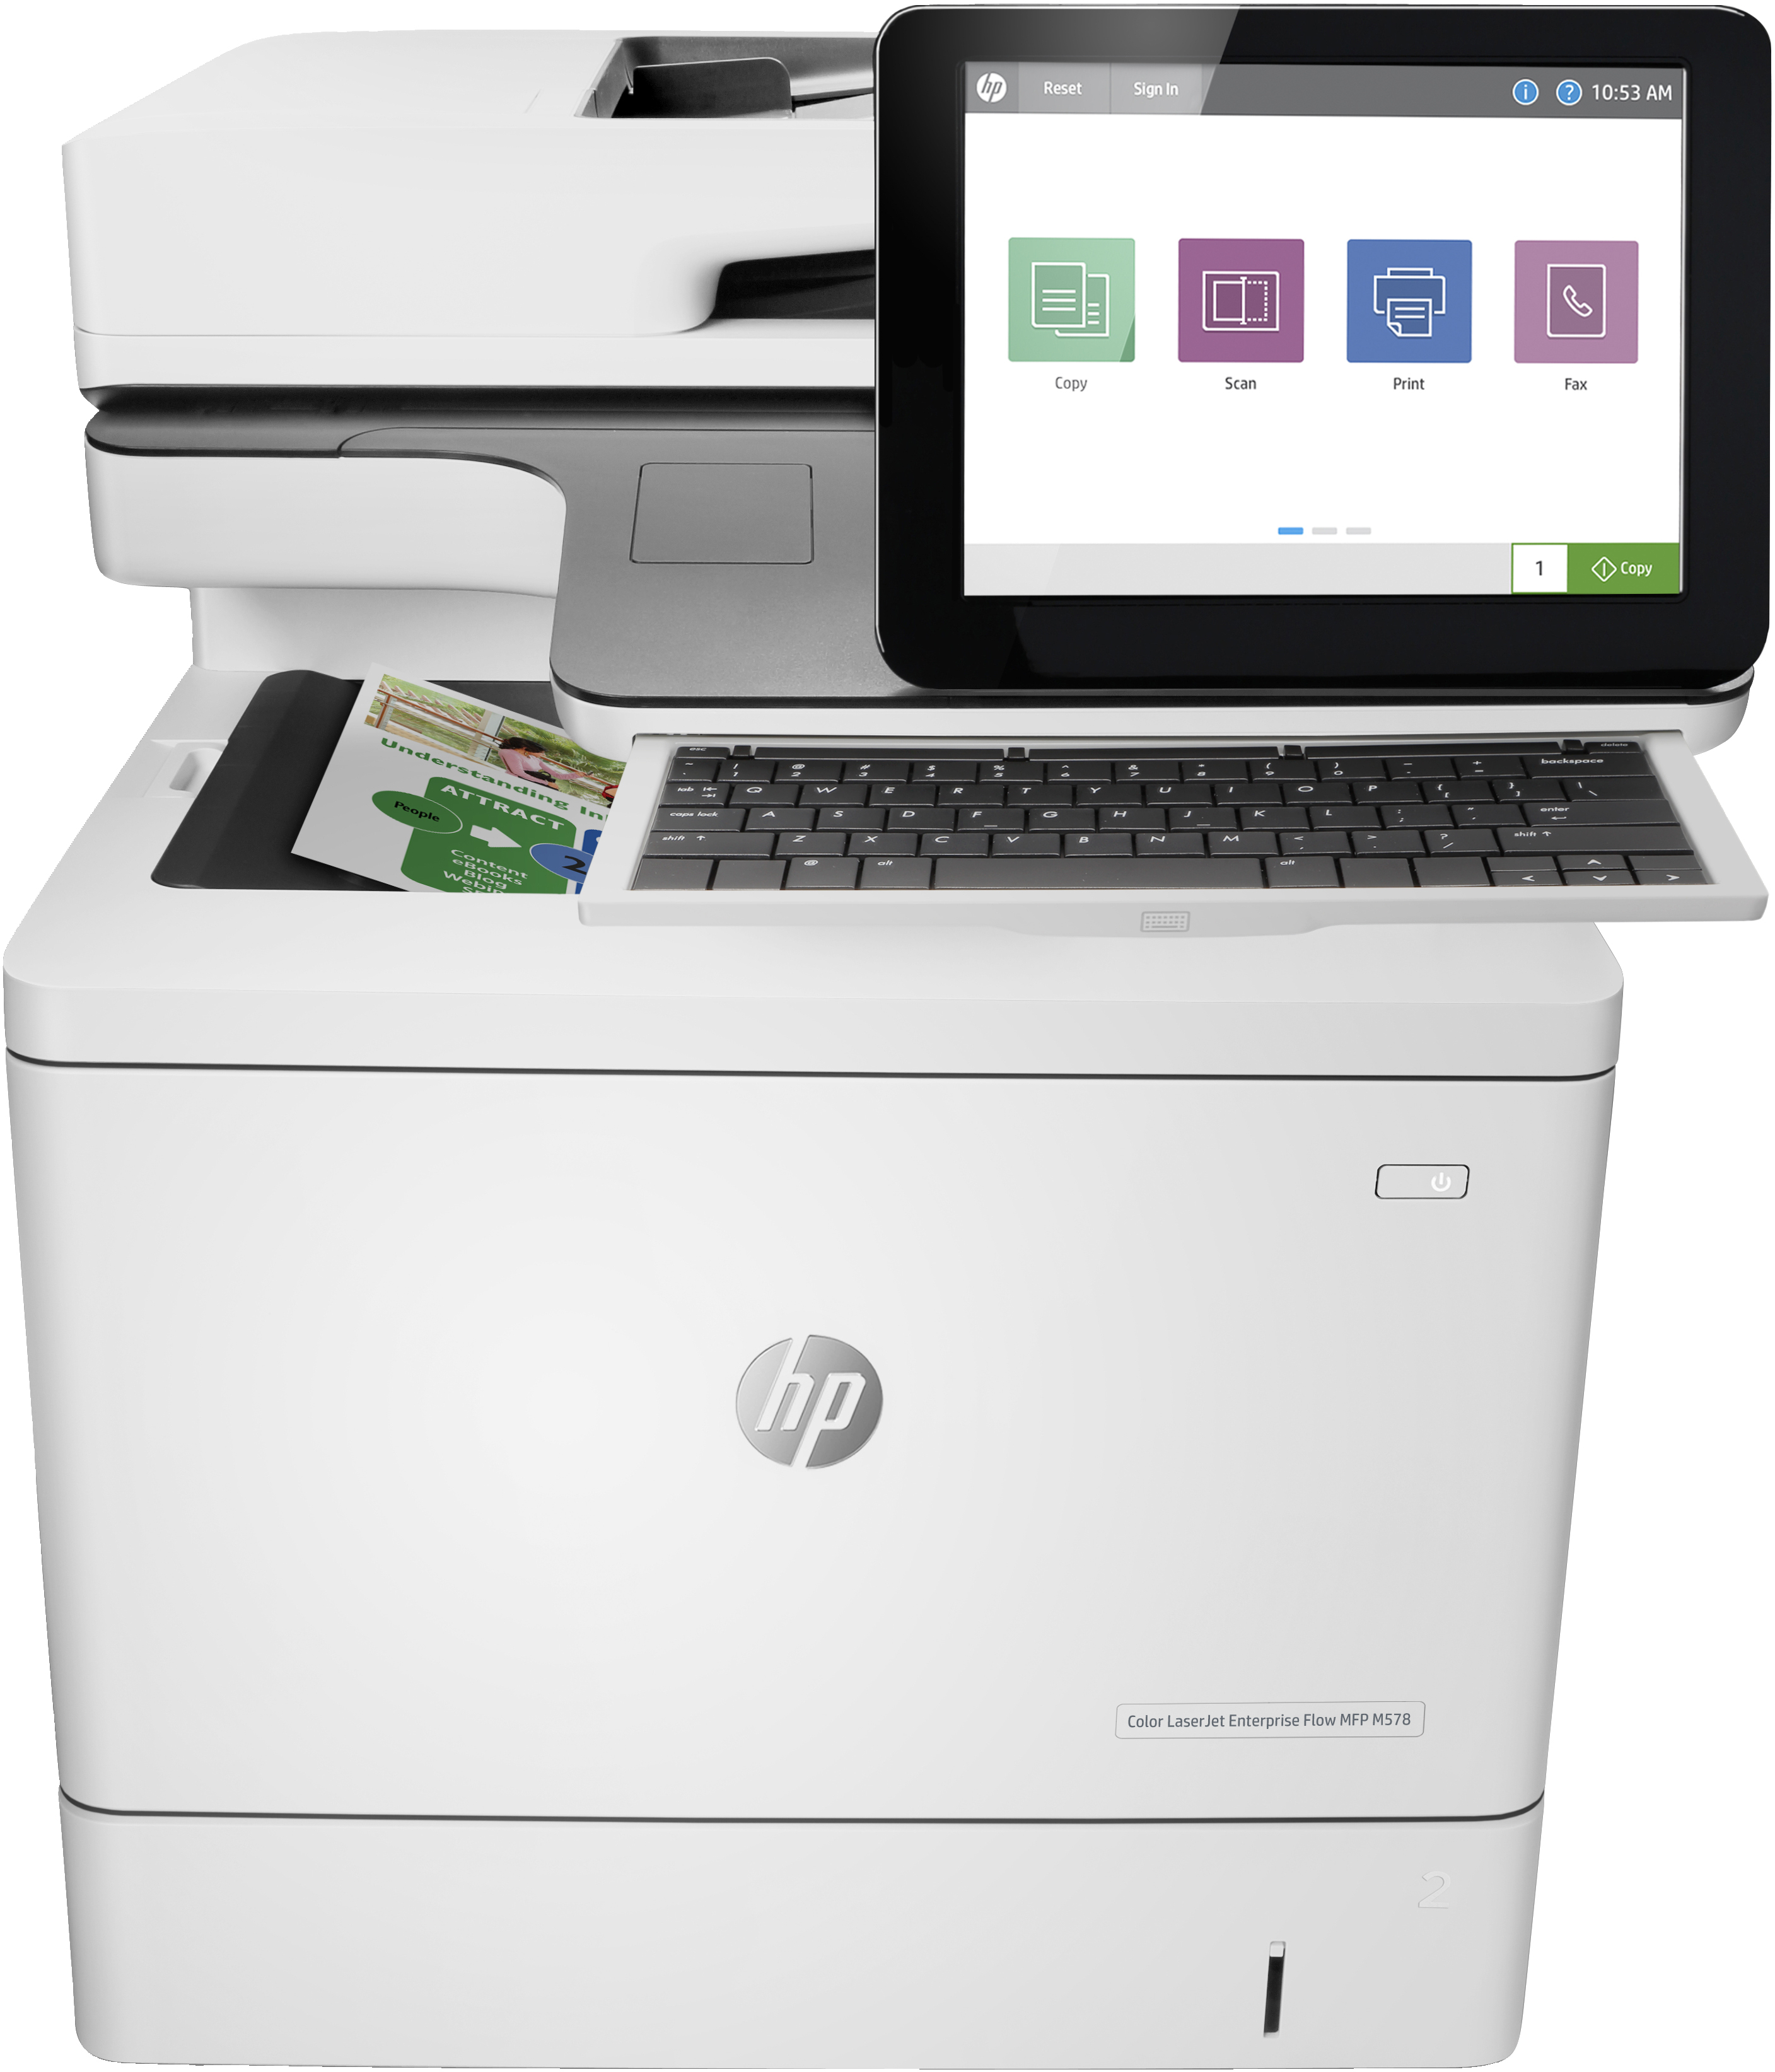 HP HP Color LaserJet Enterprise Flow MFP M578c, Color, Printer voor Printen, kopi&#235;ren, scannen, faxen, Dubbelzijdig printen; Automatische invoer voor 100 vellen; Energiezuinig